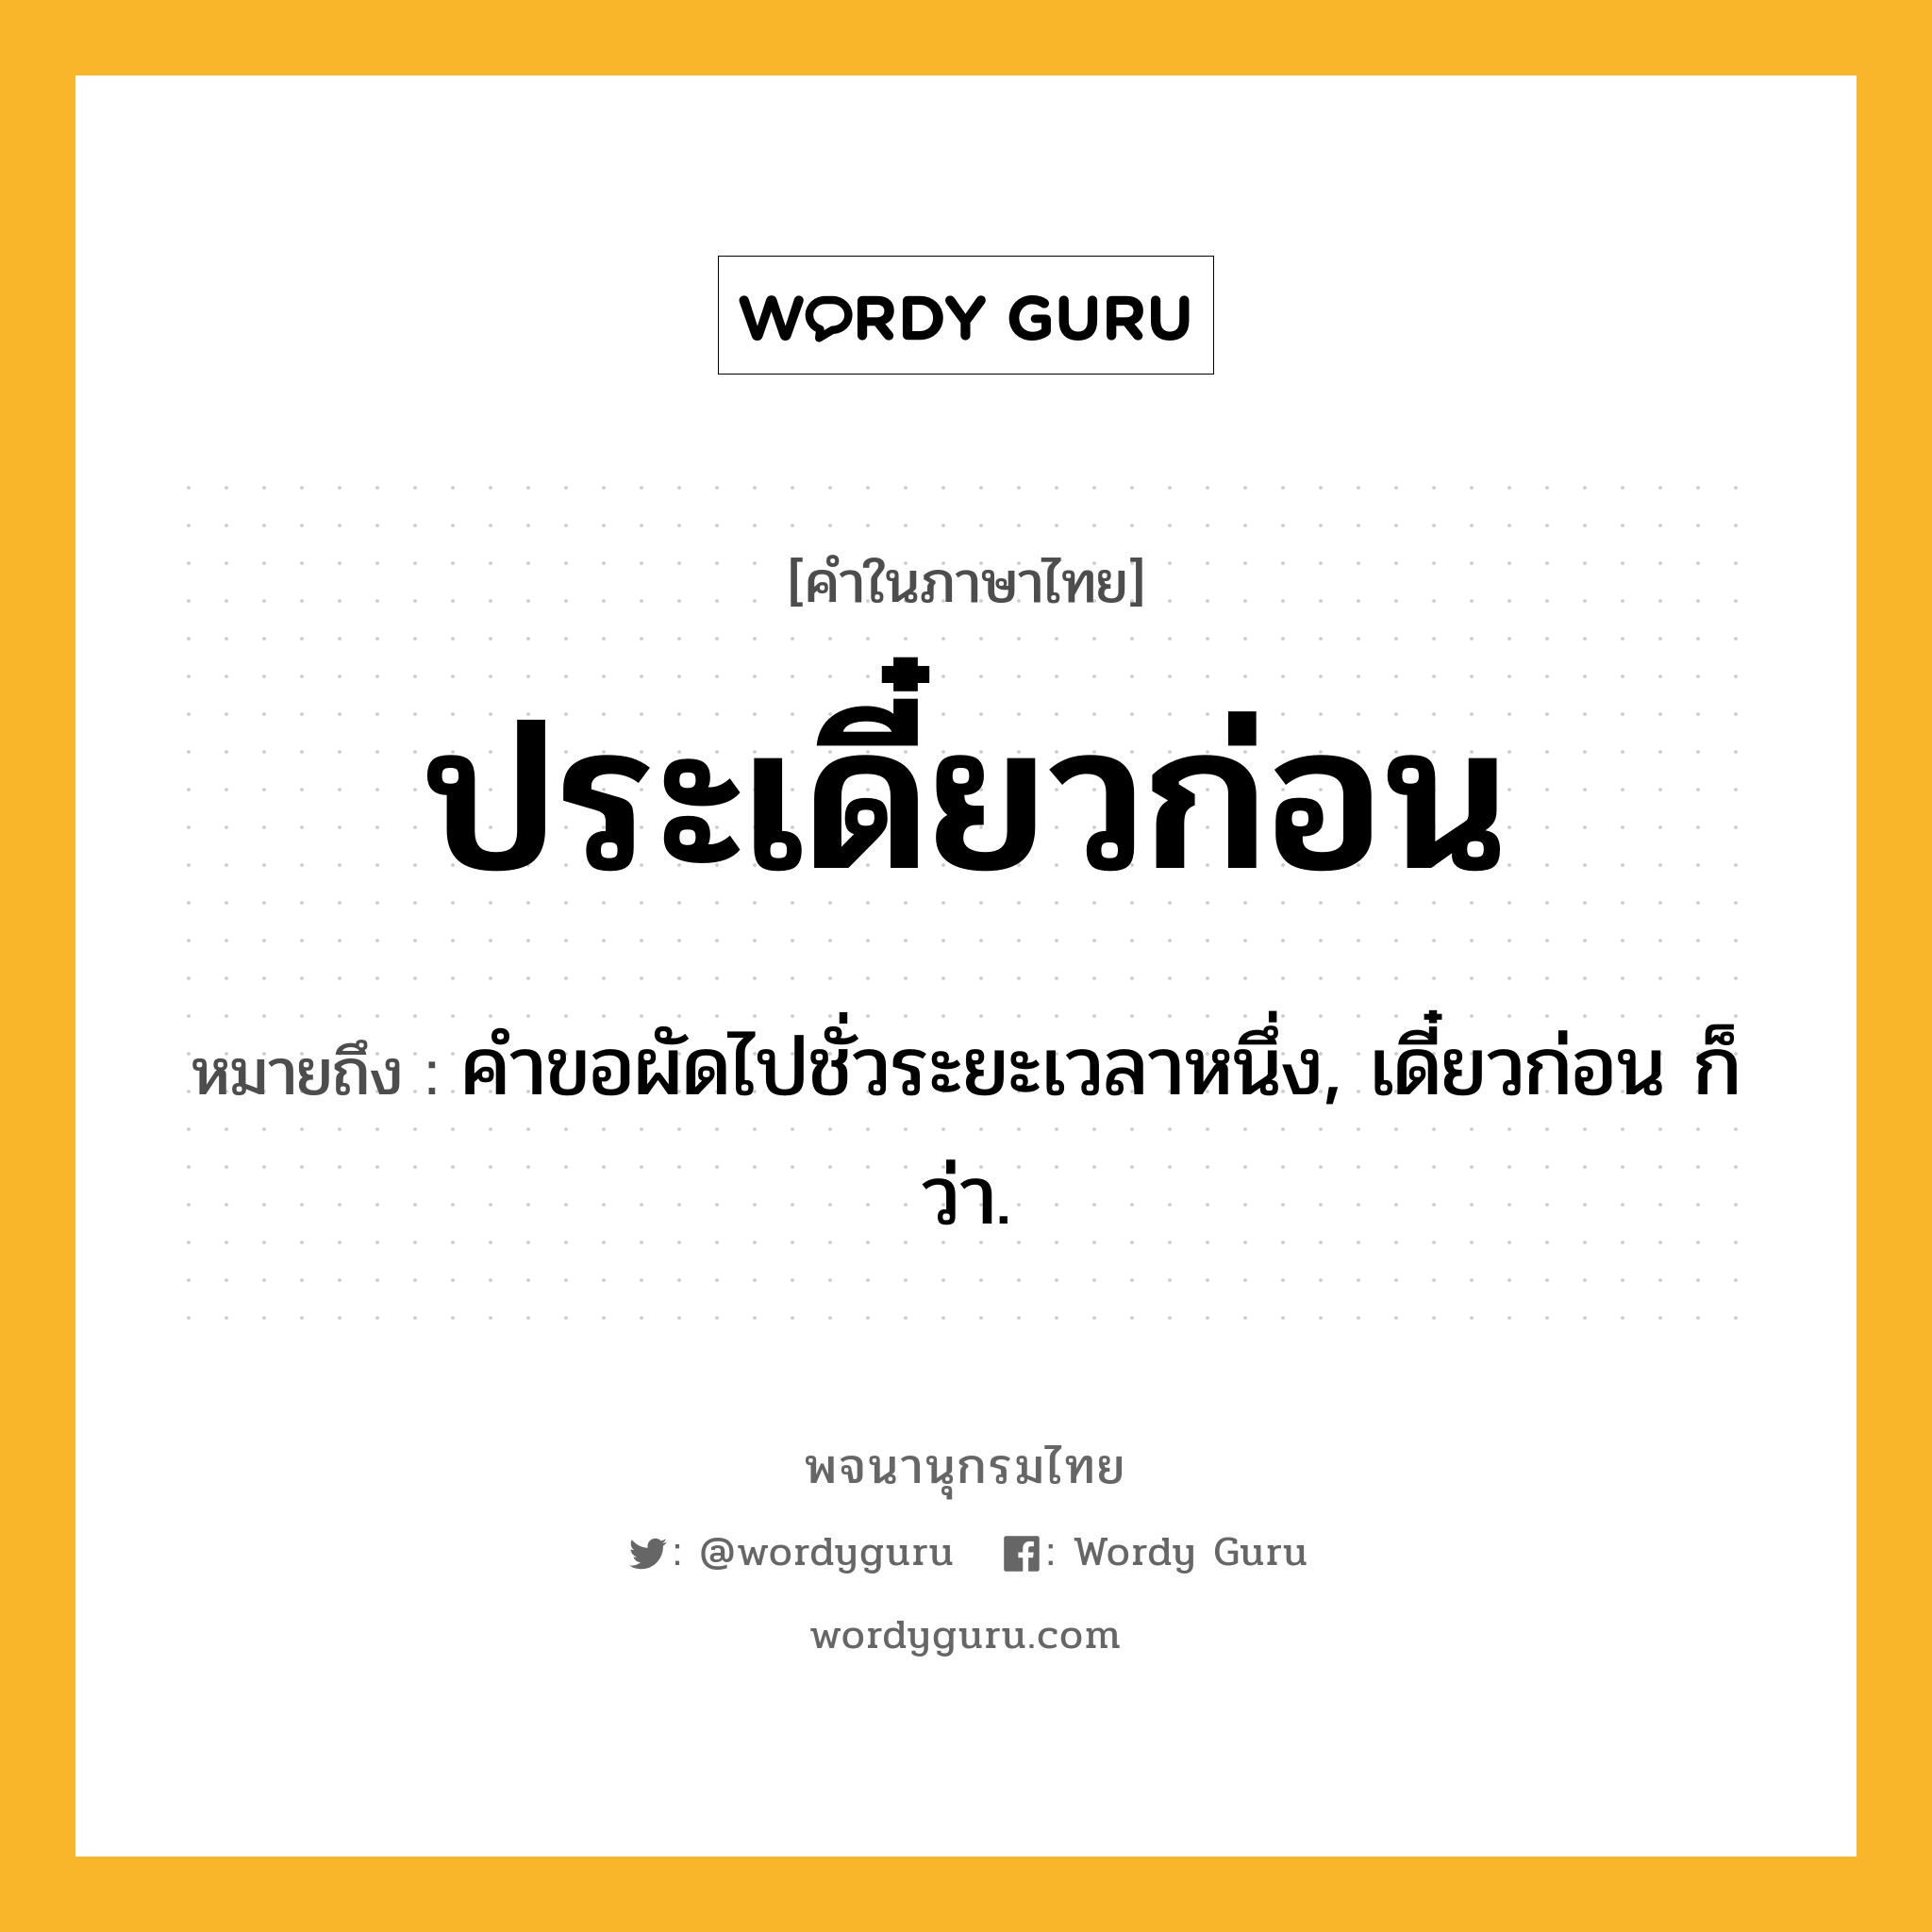 ประเดี๋ยวก่อน หมายถึงอะไร?, คำในภาษาไทย ประเดี๋ยวก่อน หมายถึง คําขอผัดไปชั่วระยะเวลาหนึ่ง, เดี๋ยวก่อน ก็ว่า.